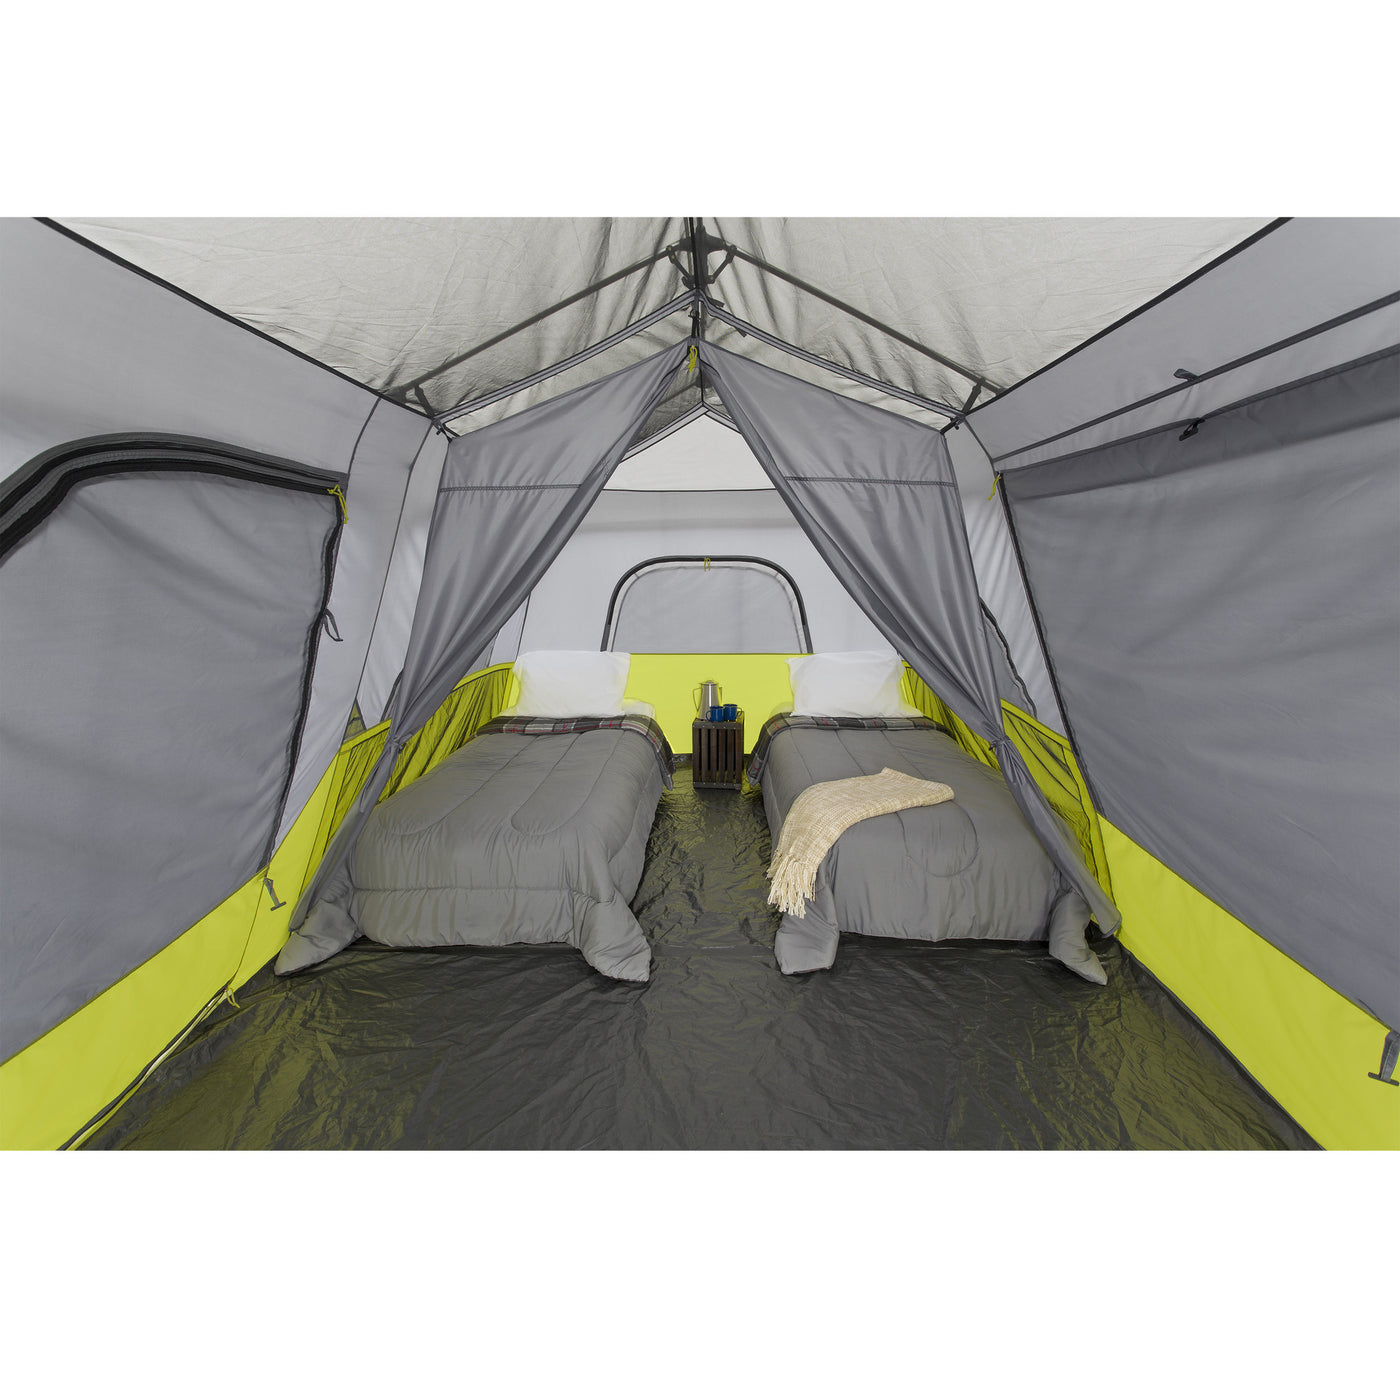 Core Equipment 9 Person Instant Cabin Tent Interior